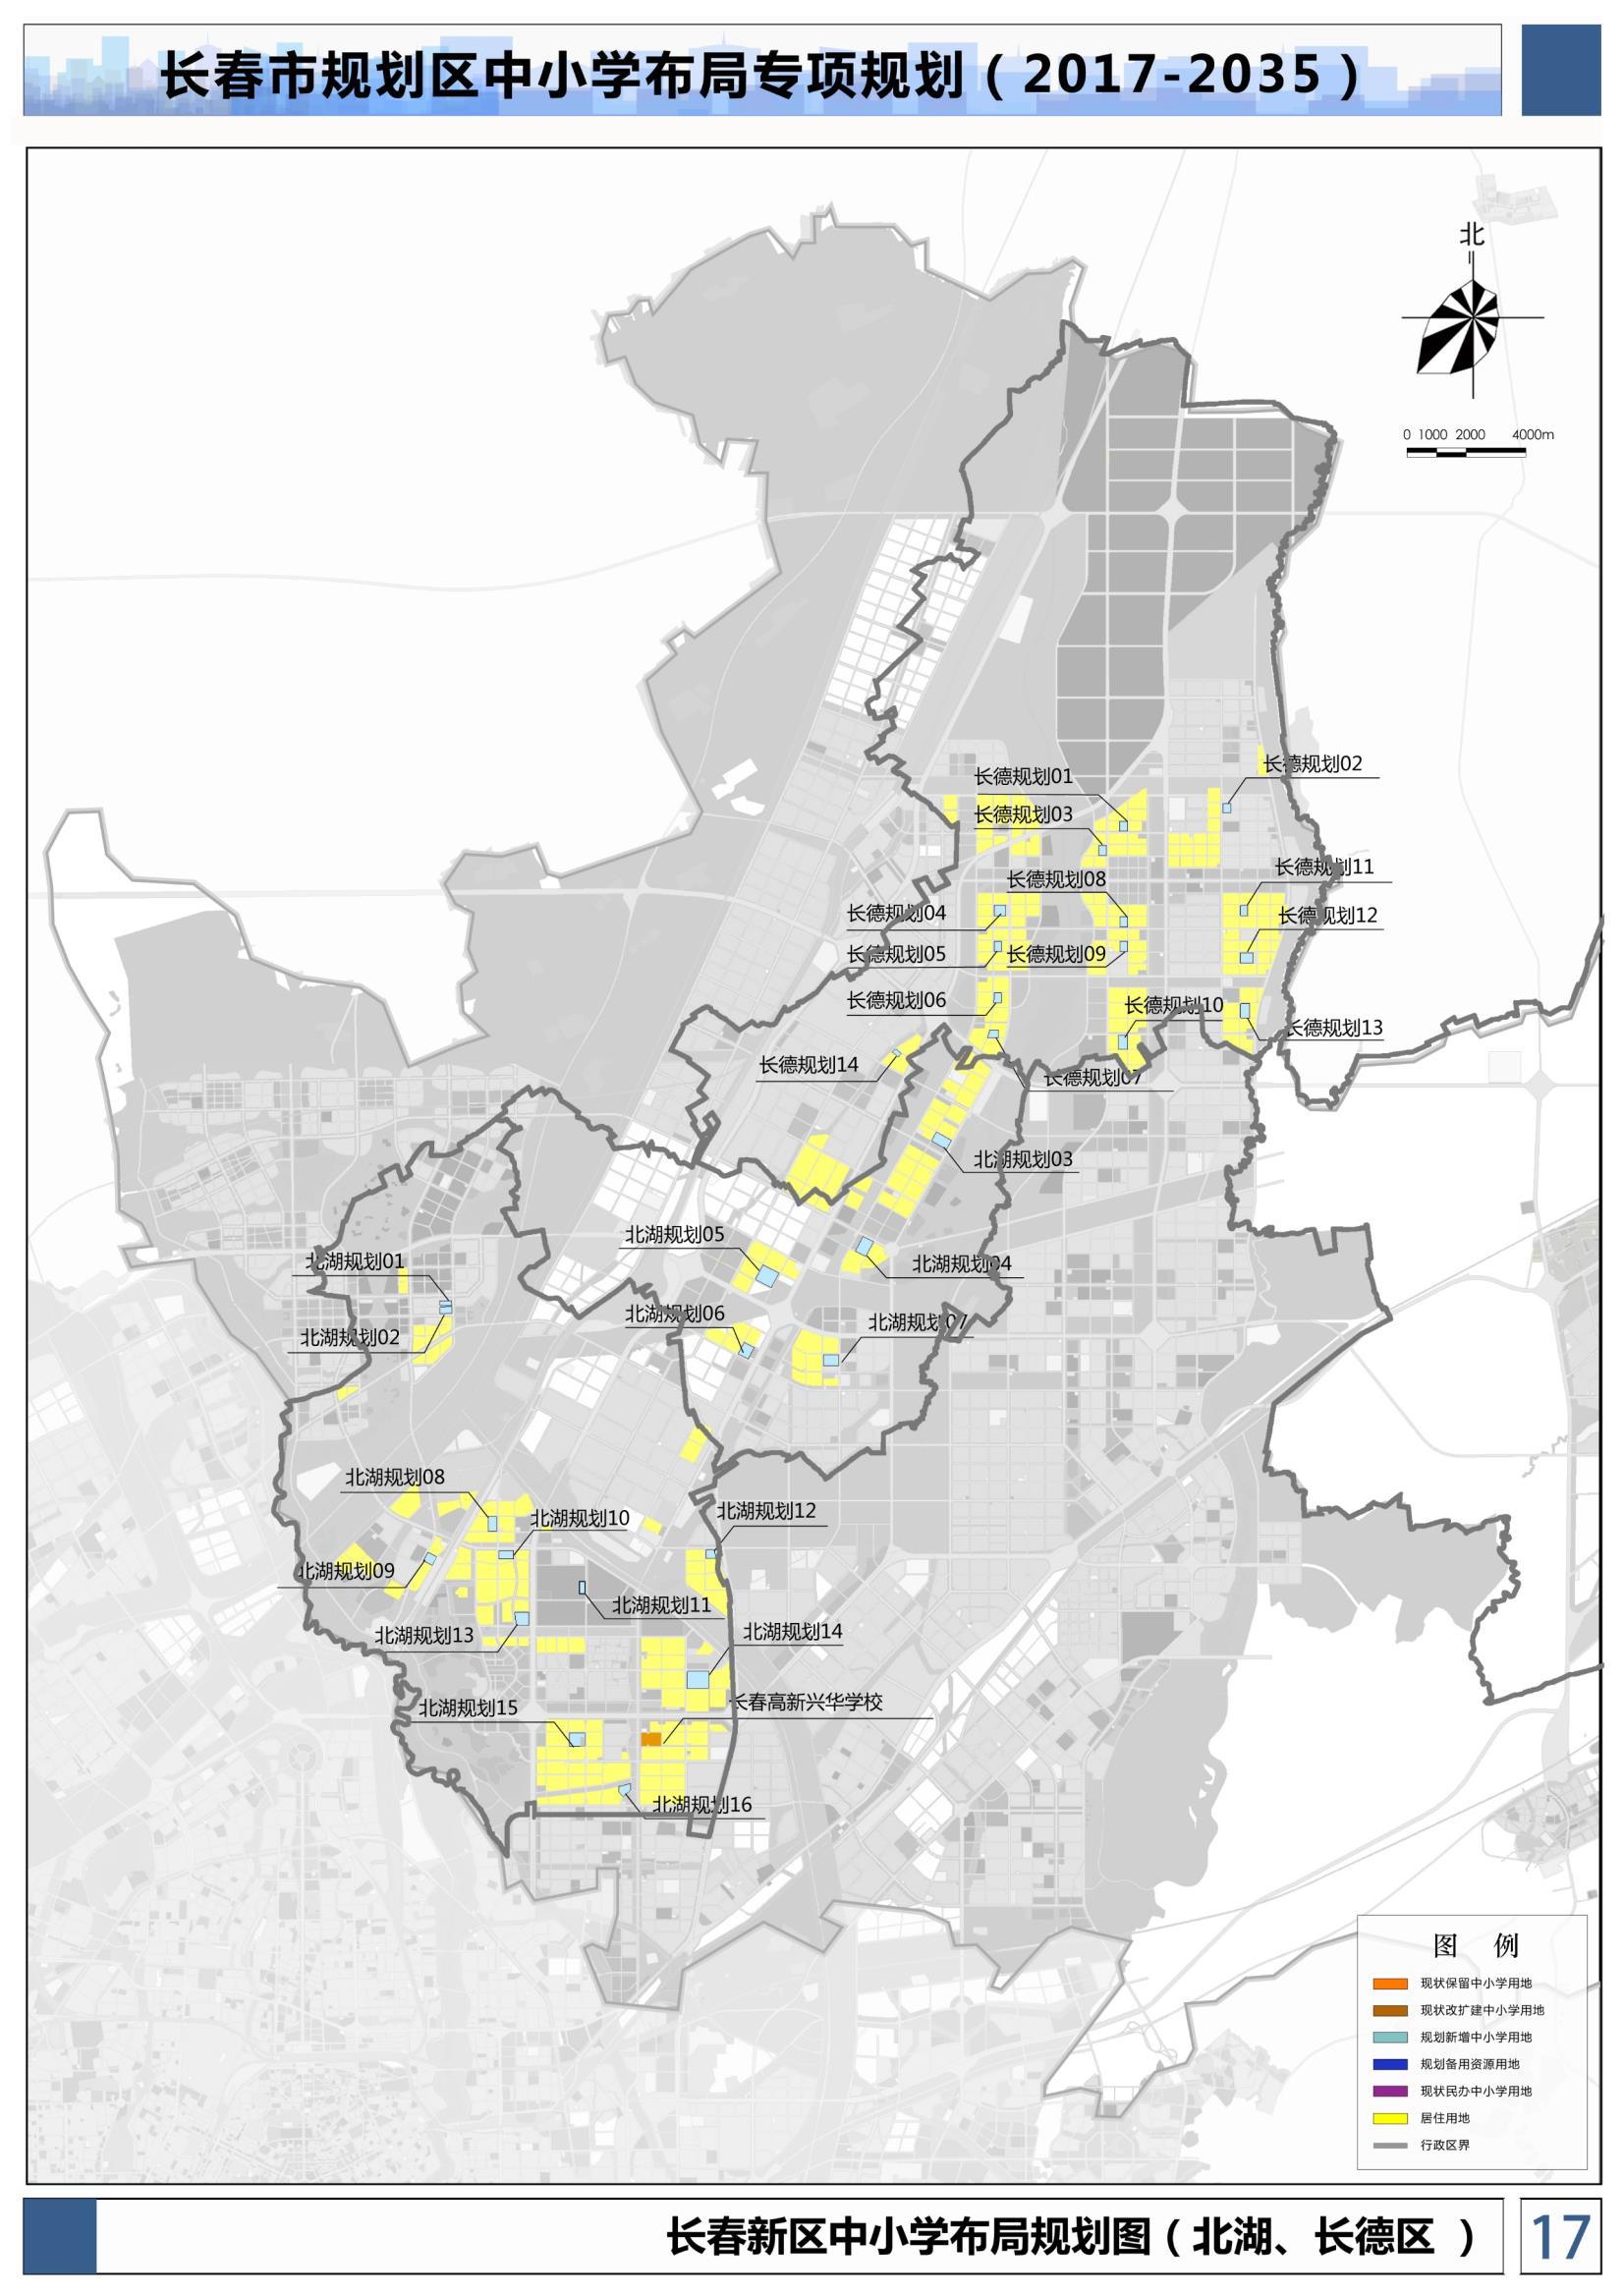 长春市规划北湖、长德区中小学布局专项规划图